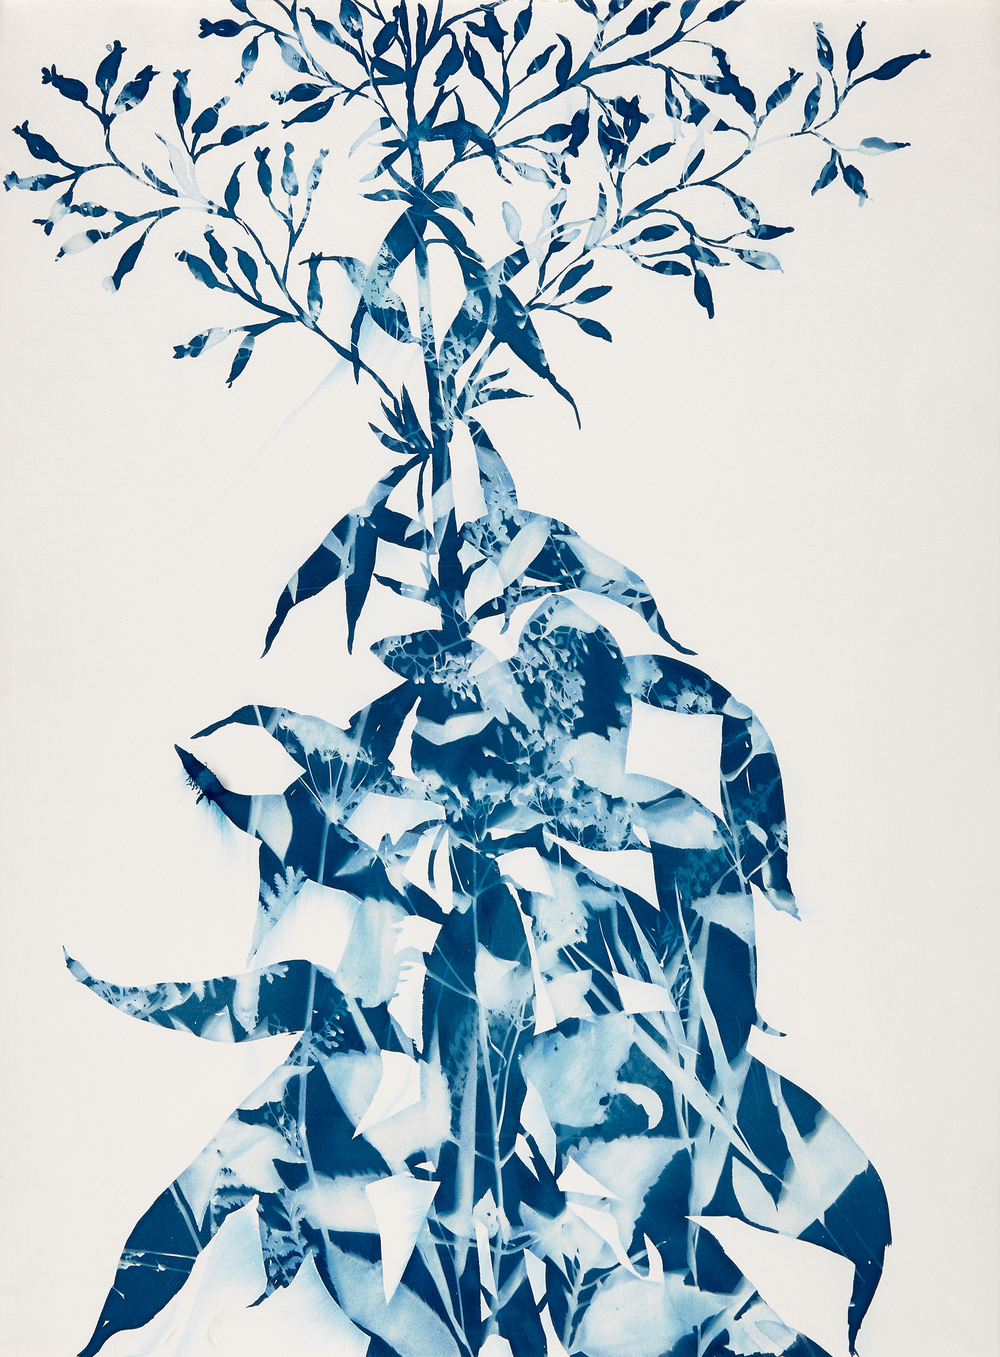 Cynthia MacCollum Botanica cyanotype